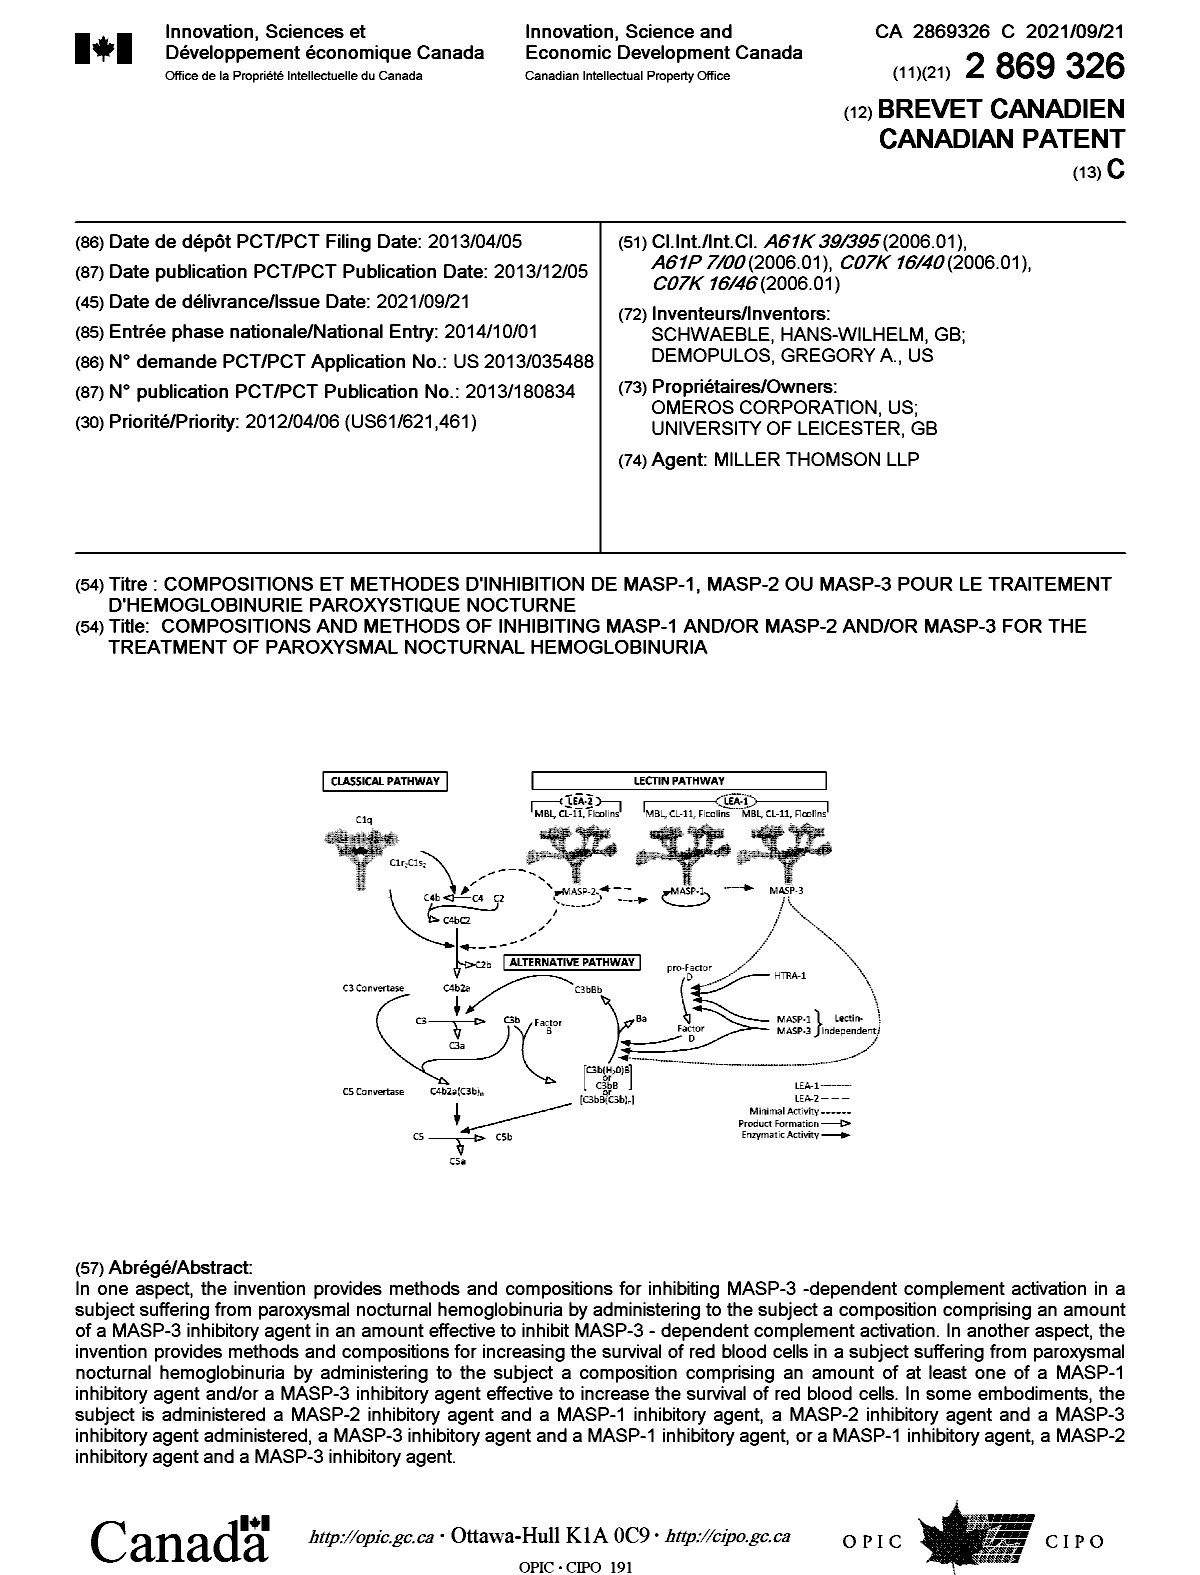 Document de brevet canadien 2869326. Page couverture 20210820. Image 1 de 1